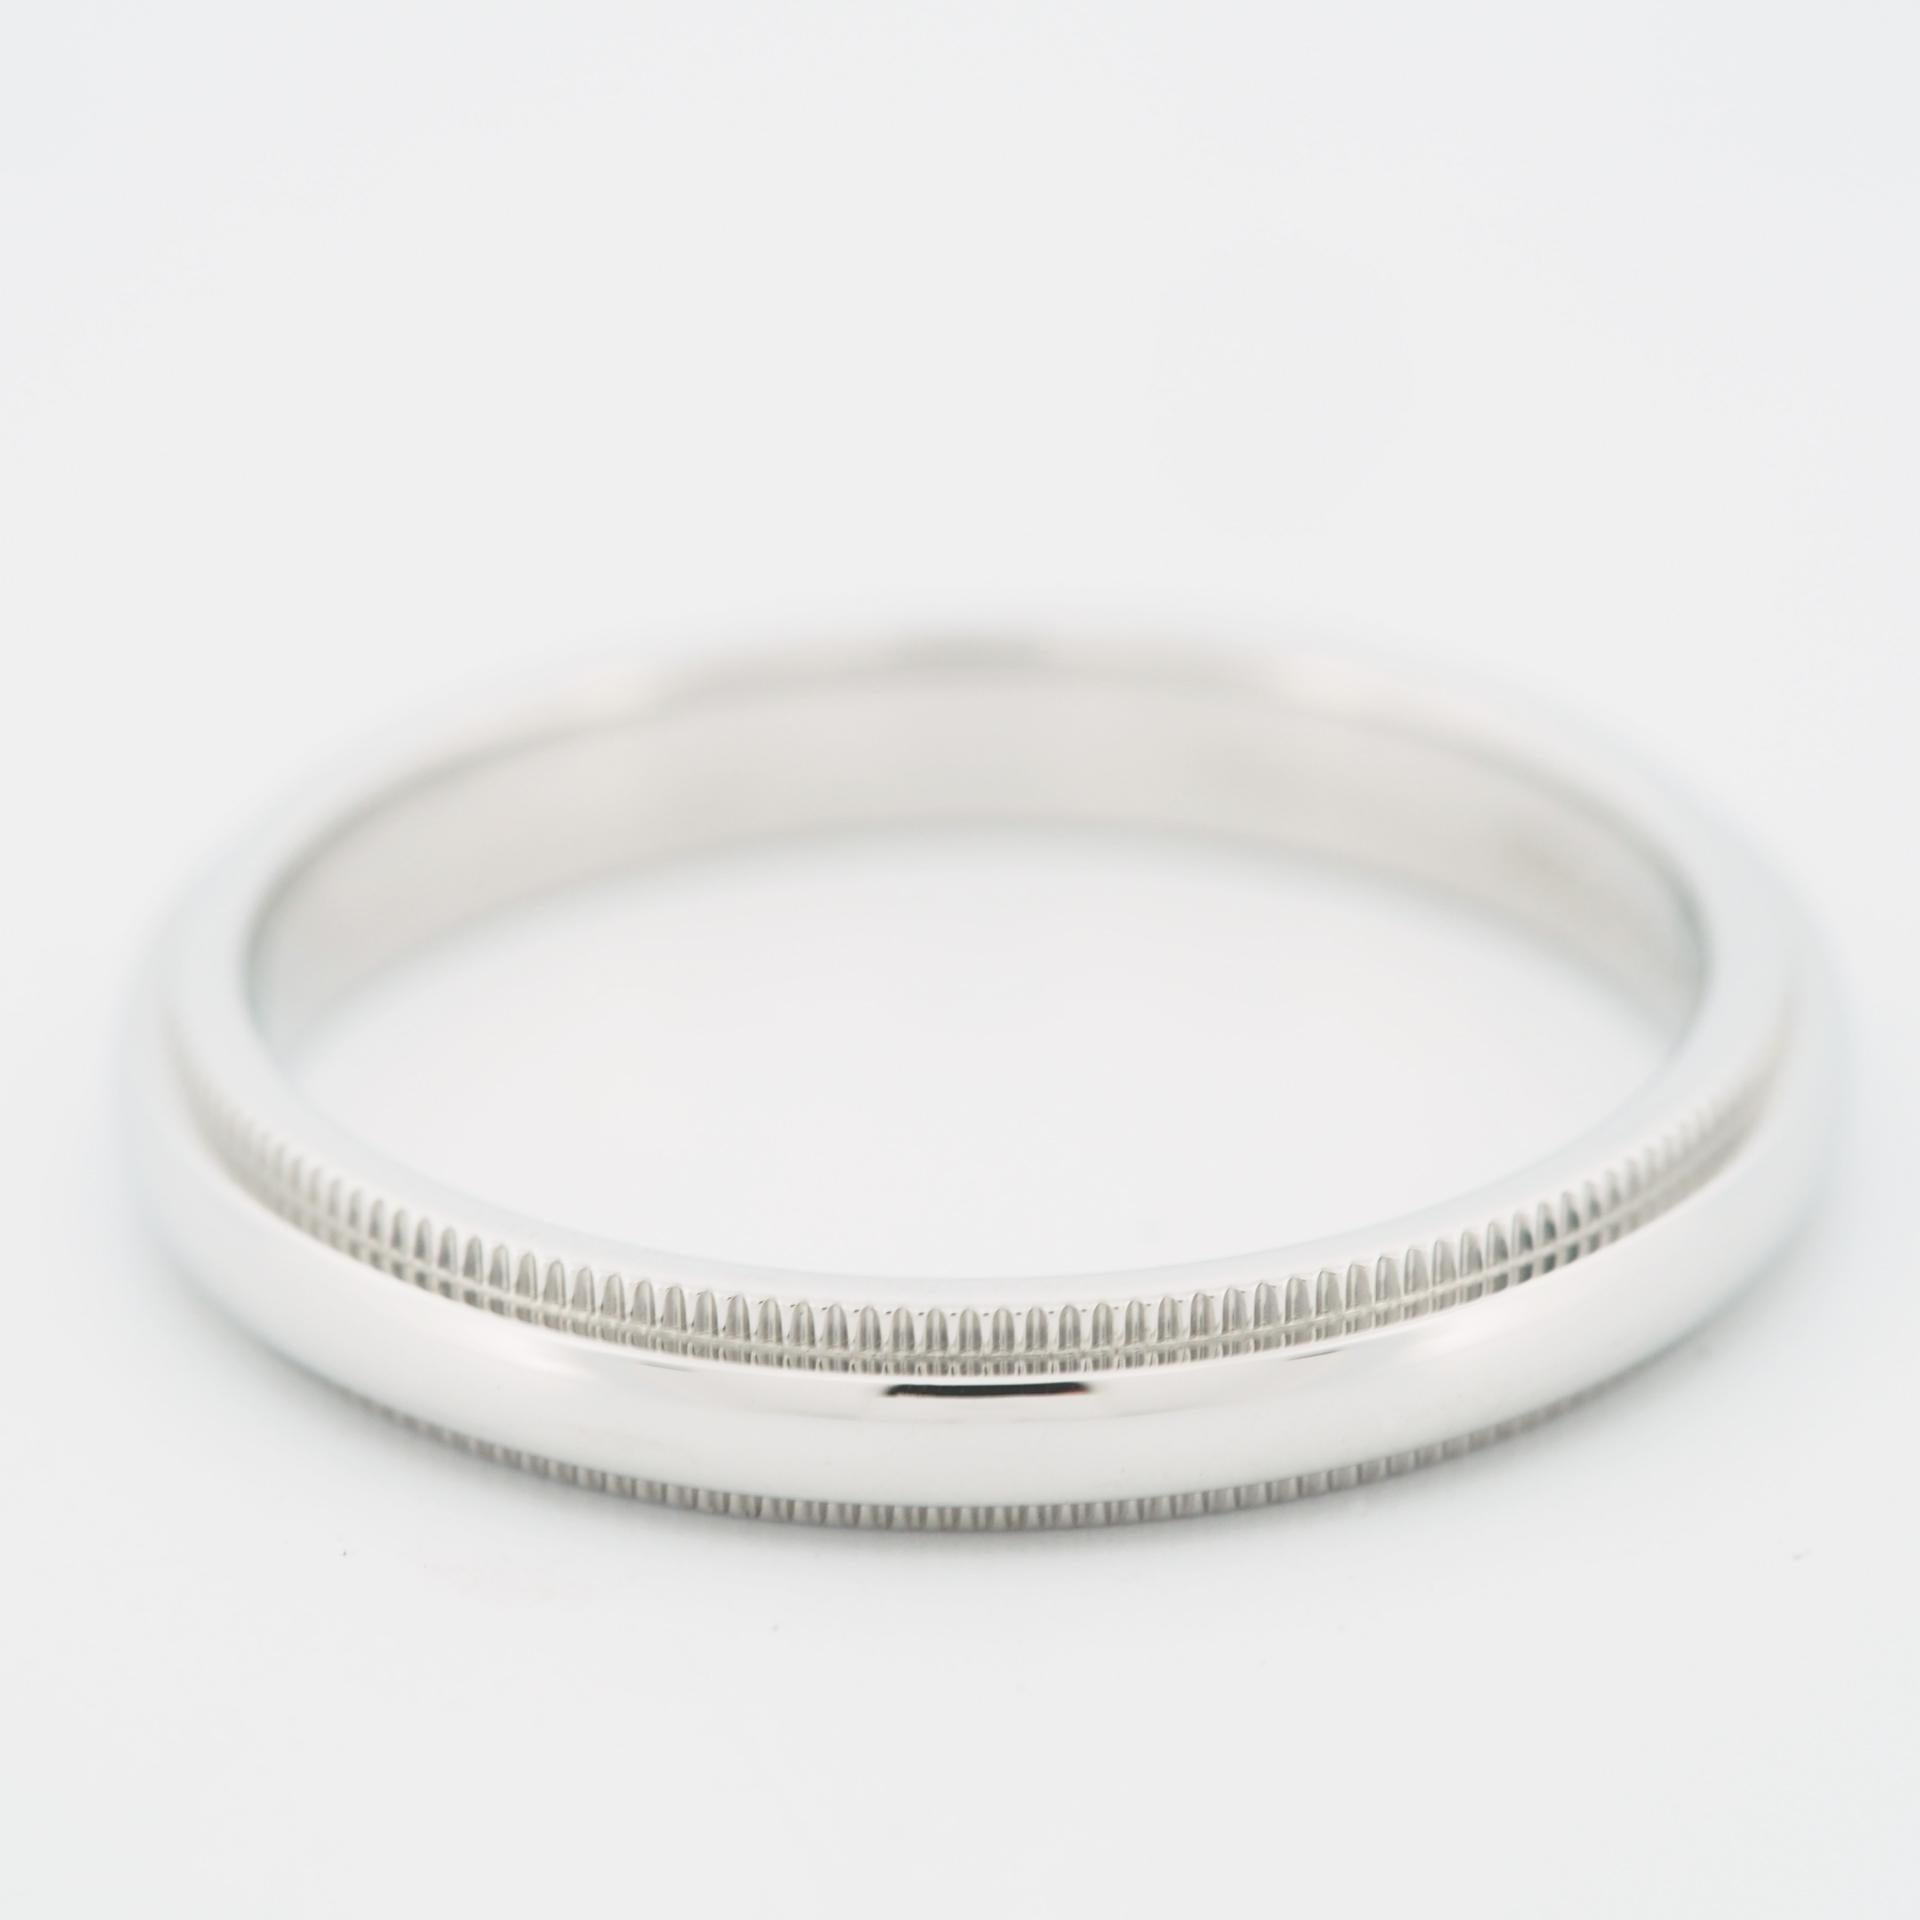 Tiffany Milgrain 3mm Wedding Band Ring Platinum 950 US 7.75 1